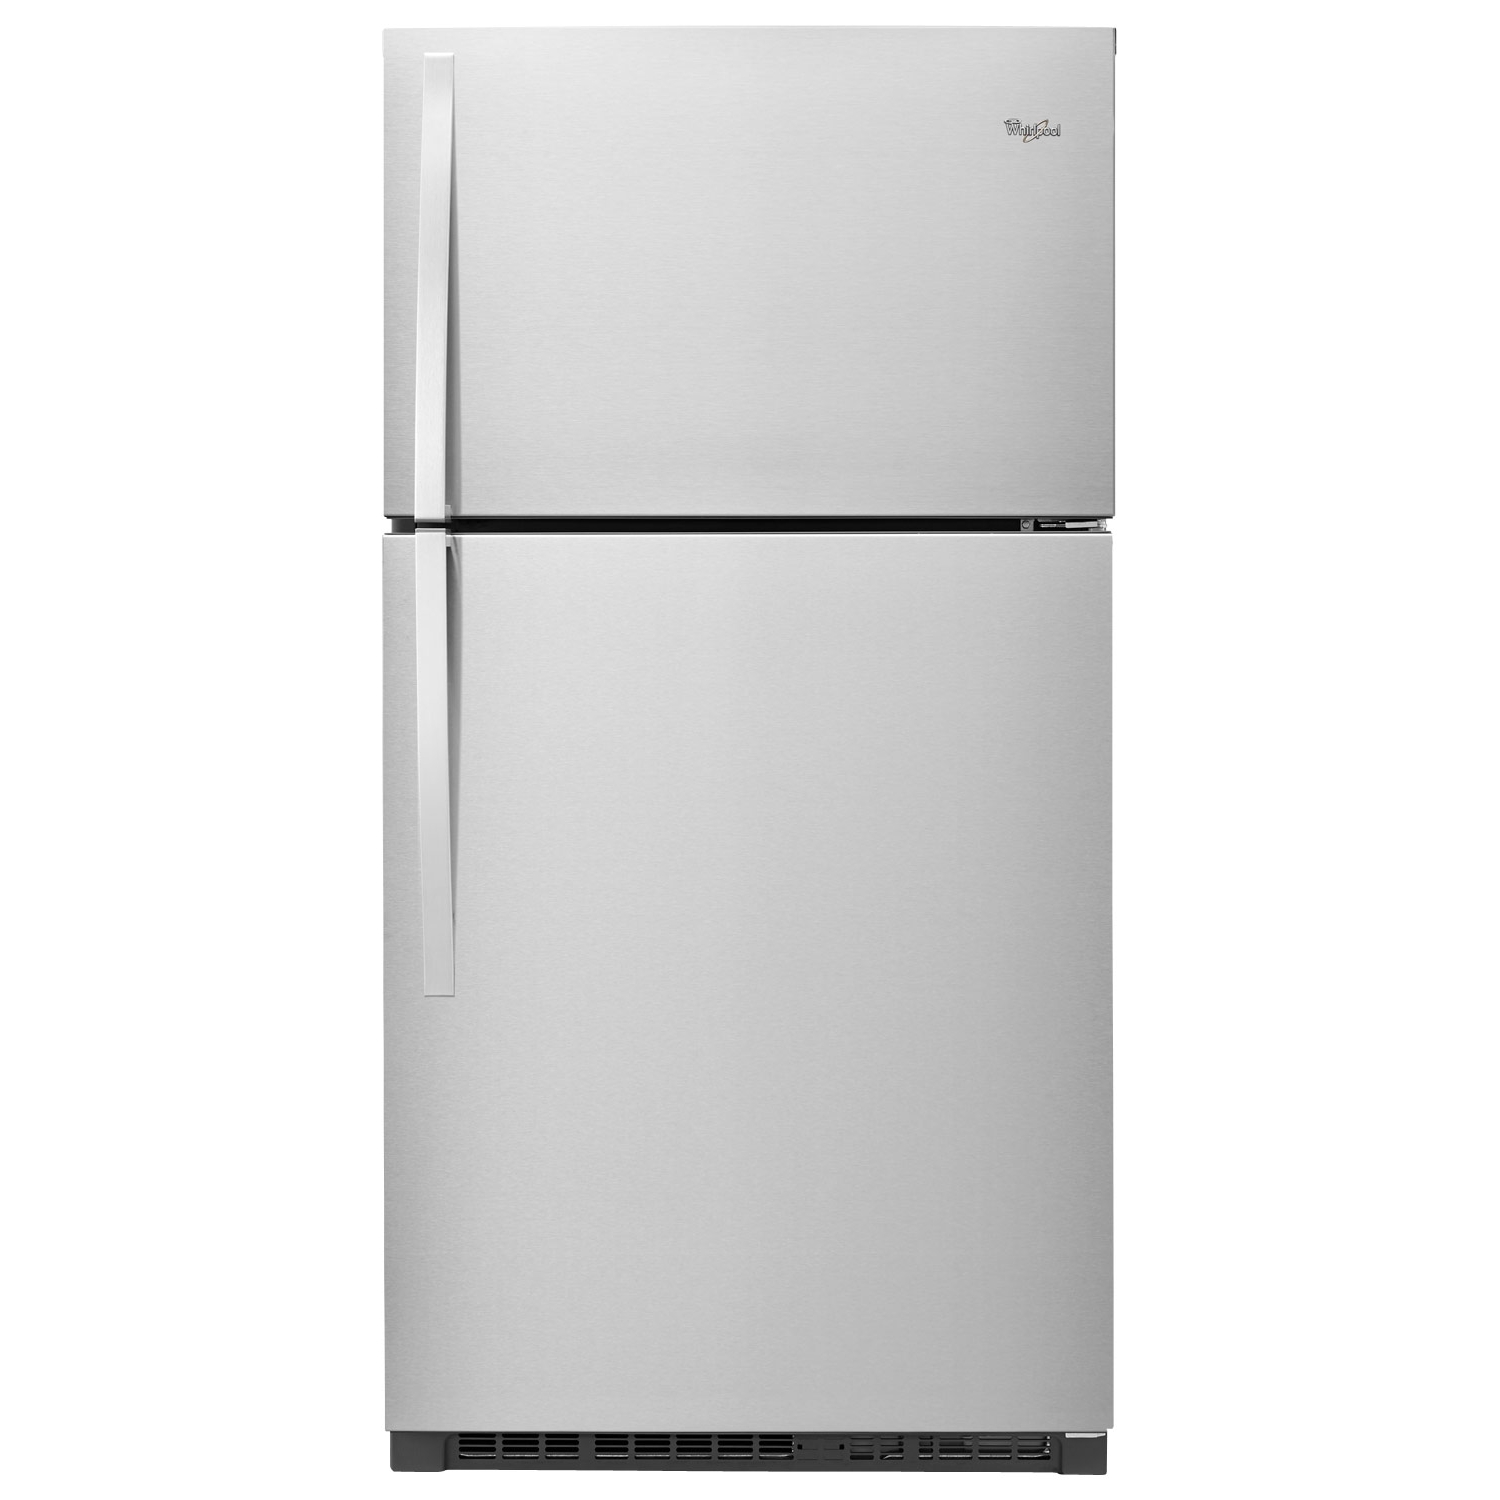 Comprar Whirlpool Refrigerador WRT541SZDM